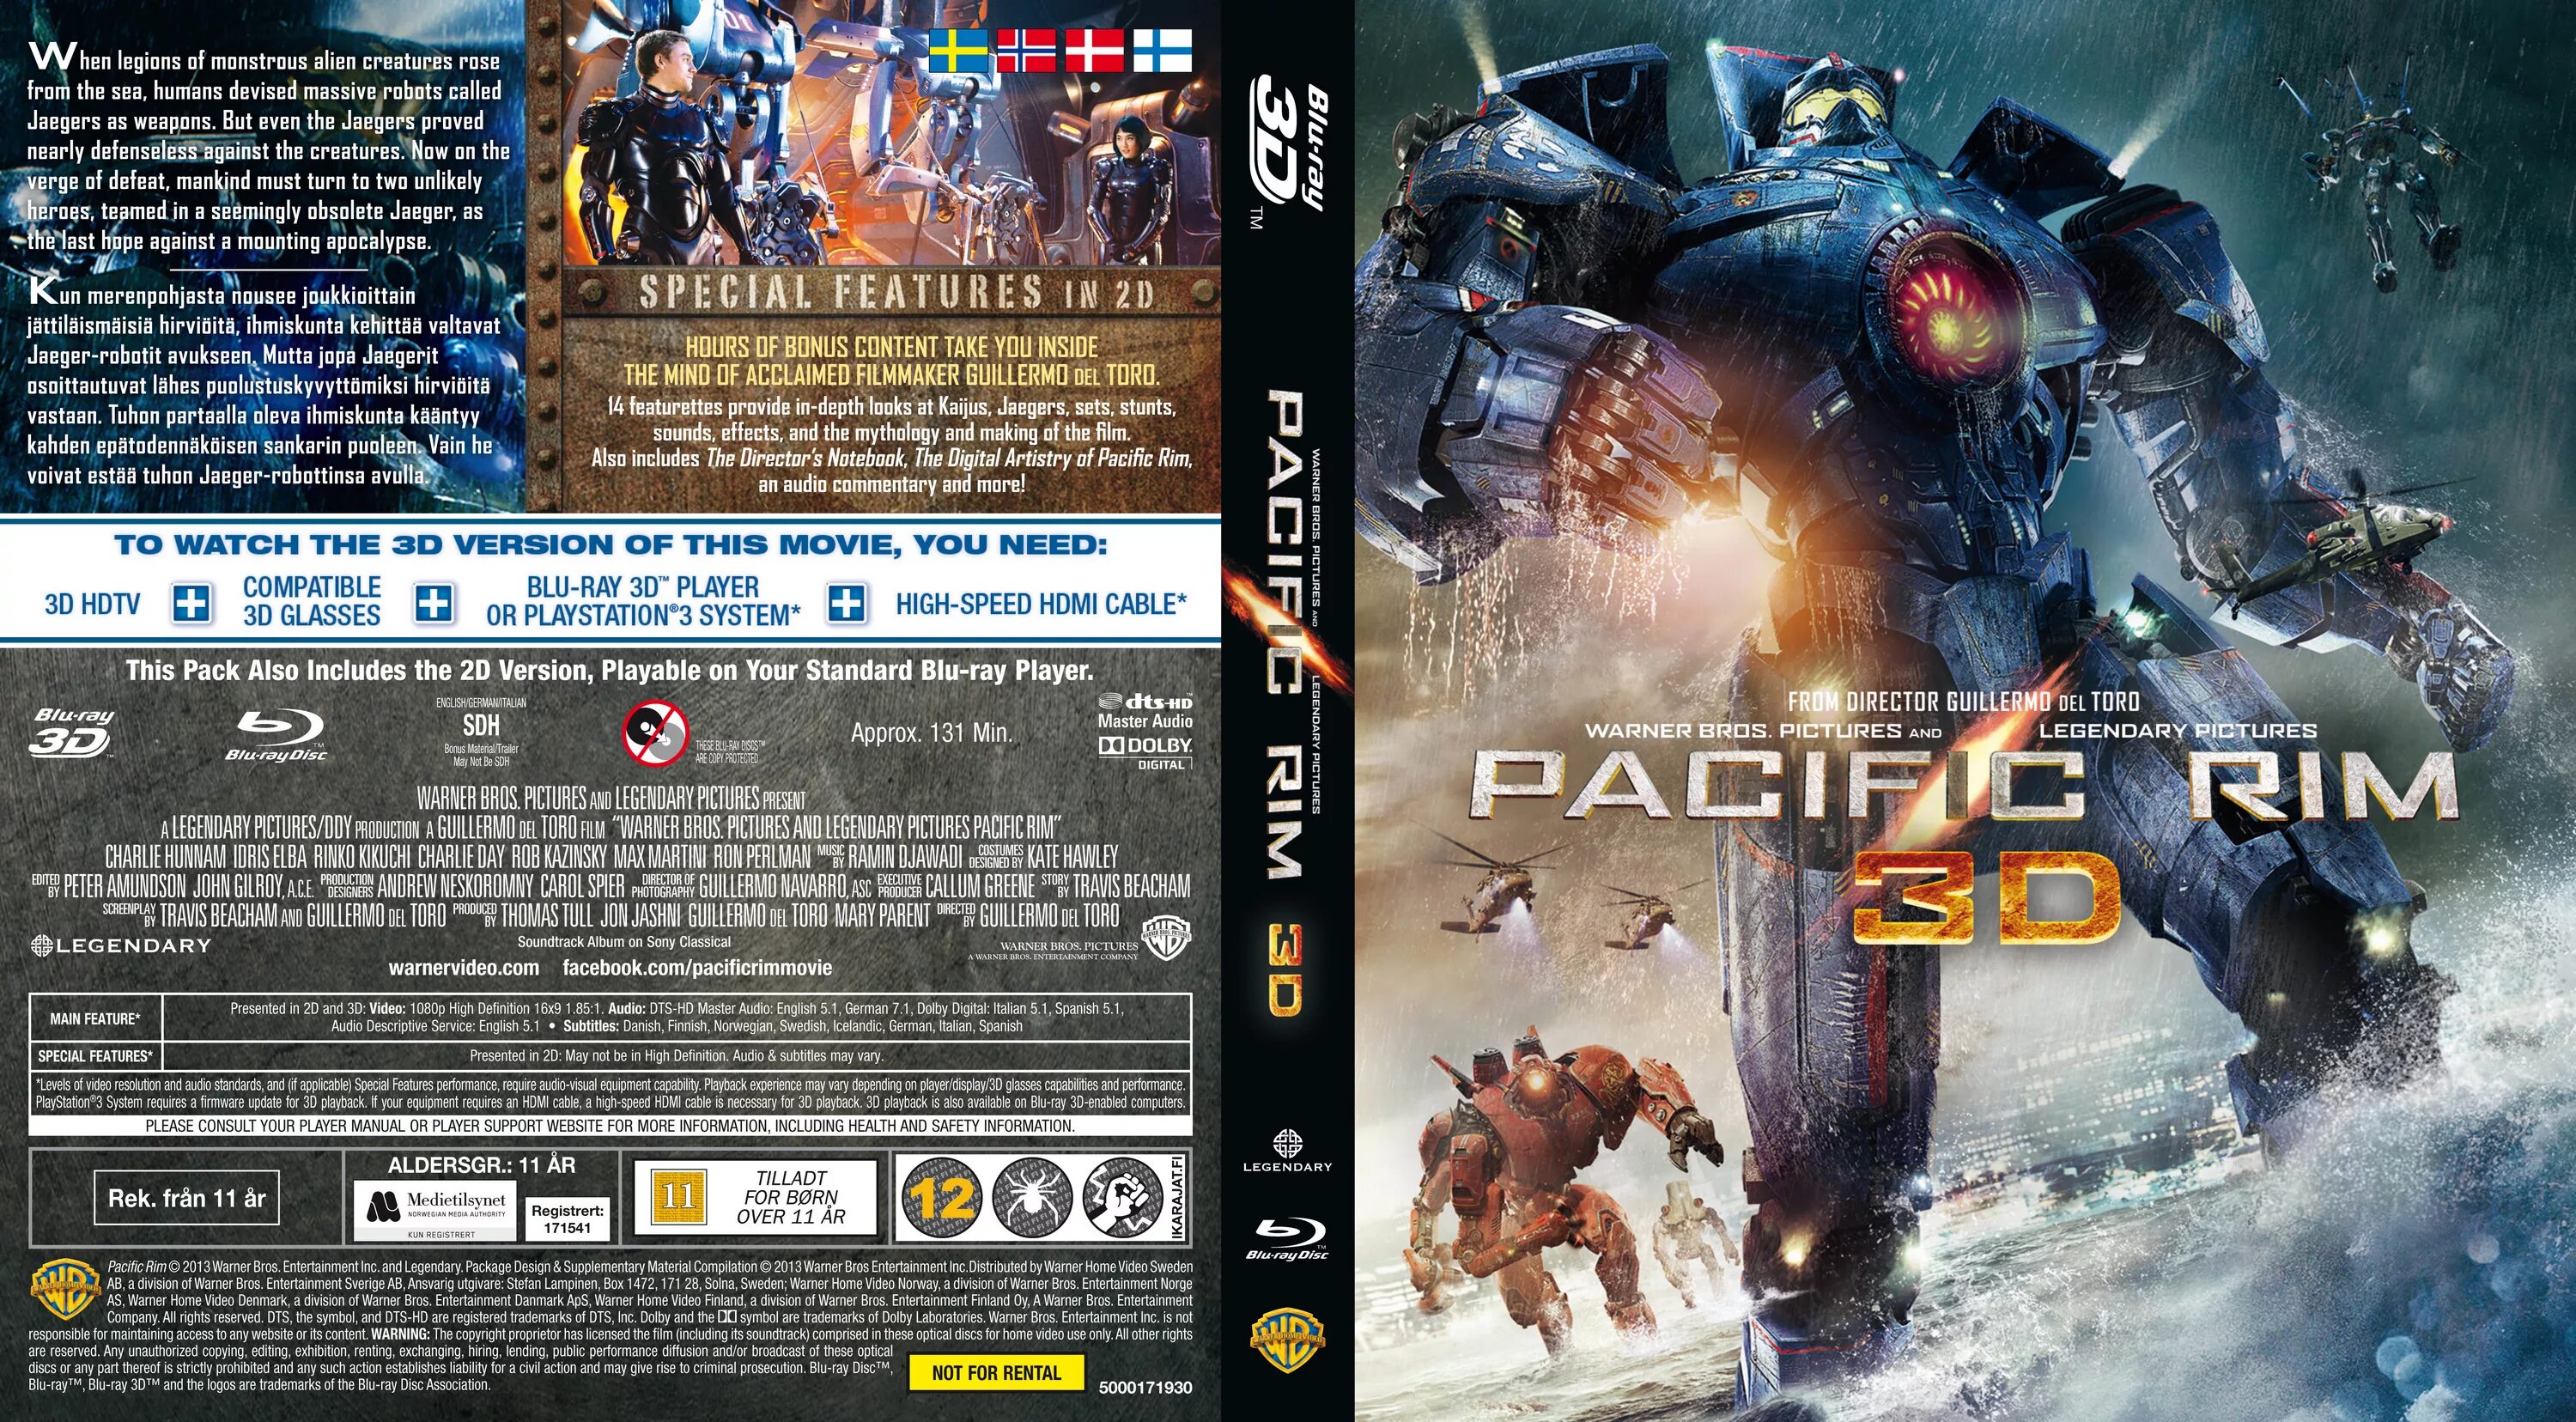 Blu ray магическая битва 2. Тихоокеанский рубеж Blu ray. Тихоокеанский рубеж диск. Тихоокеанский рубеж Blu-ray издание. Тихоокеанский рубеж 1-2 обложка Blu-ray.